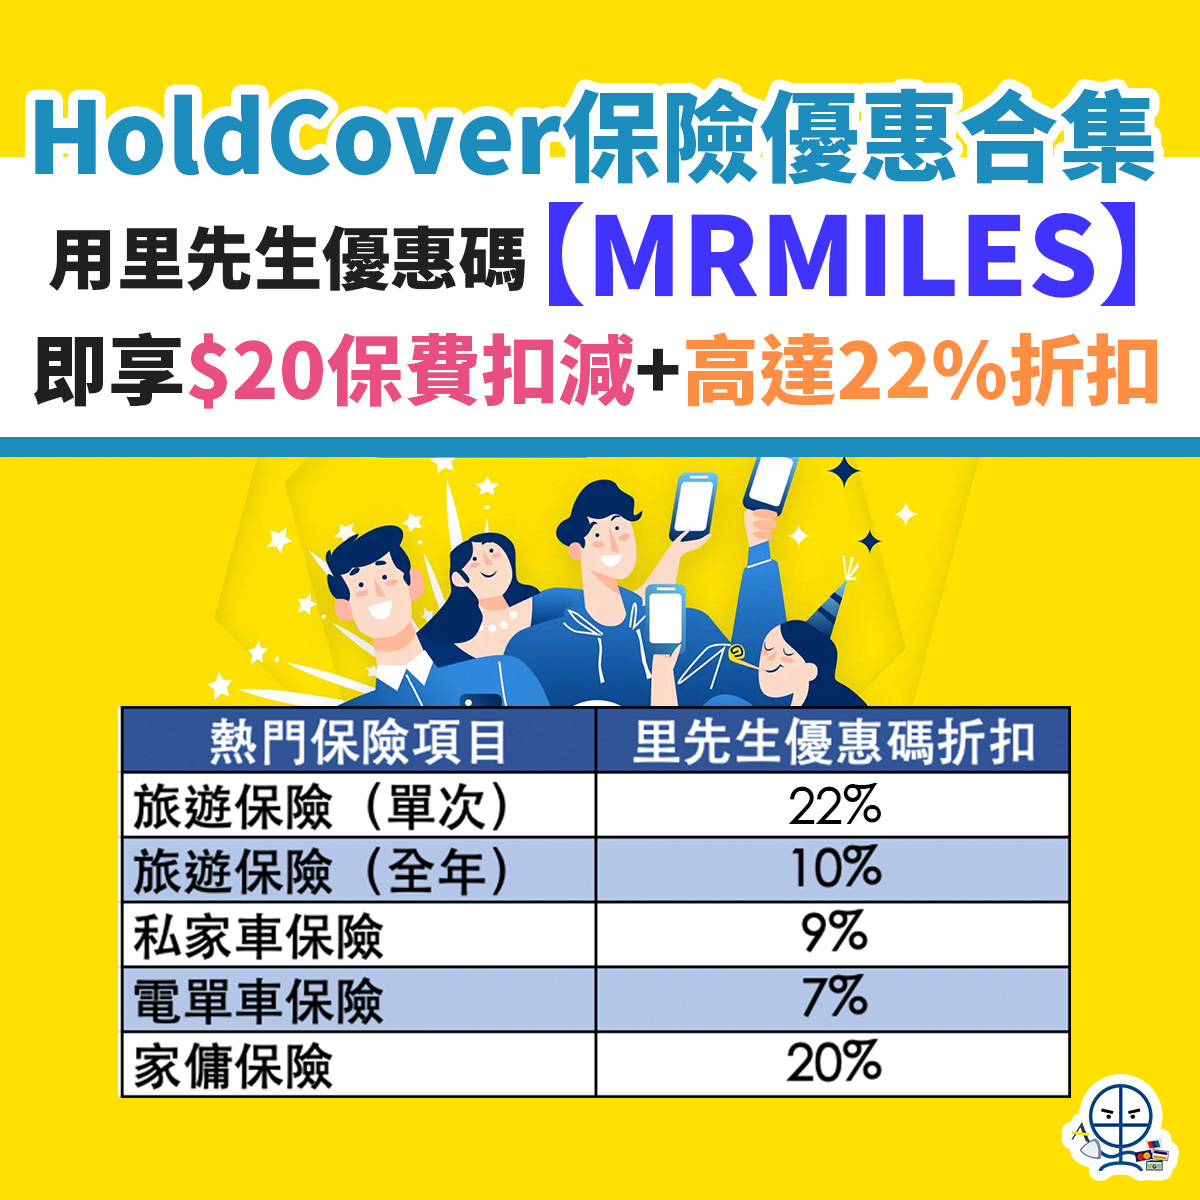 holdcover-保險-里先生-優惠-汽車保-旅遊保-折扣-3